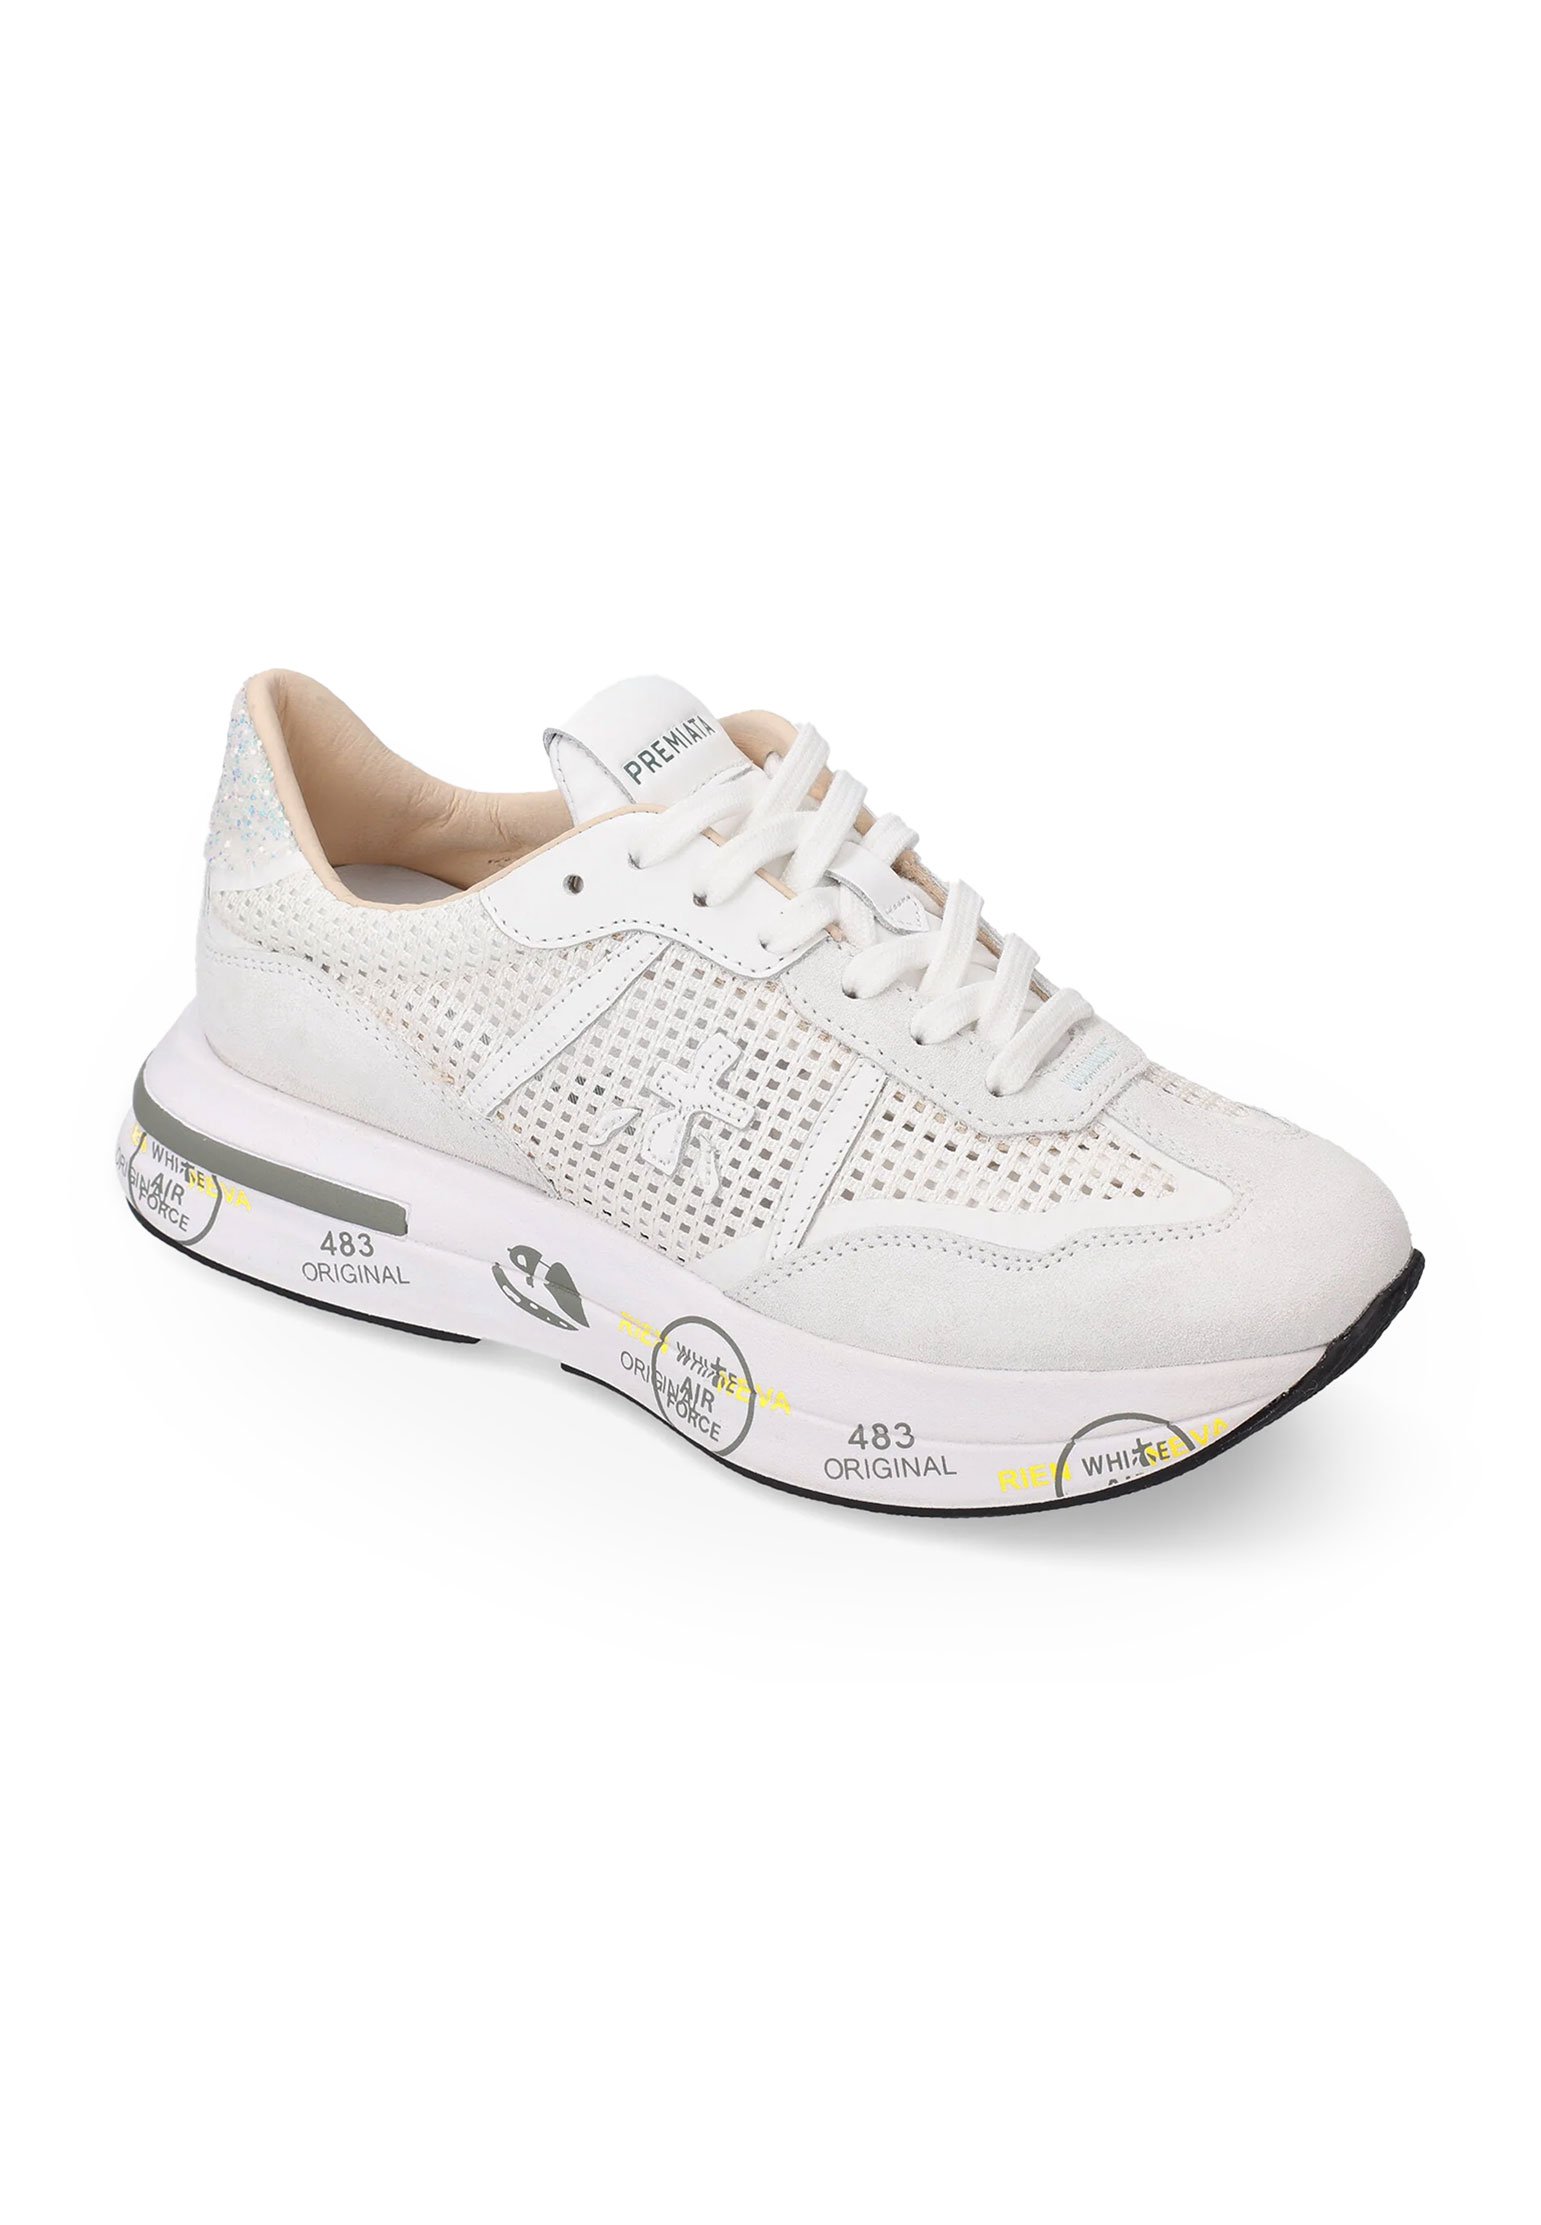 Sneakers PREMIATA Color: white (Code: 4171) in online store Allure